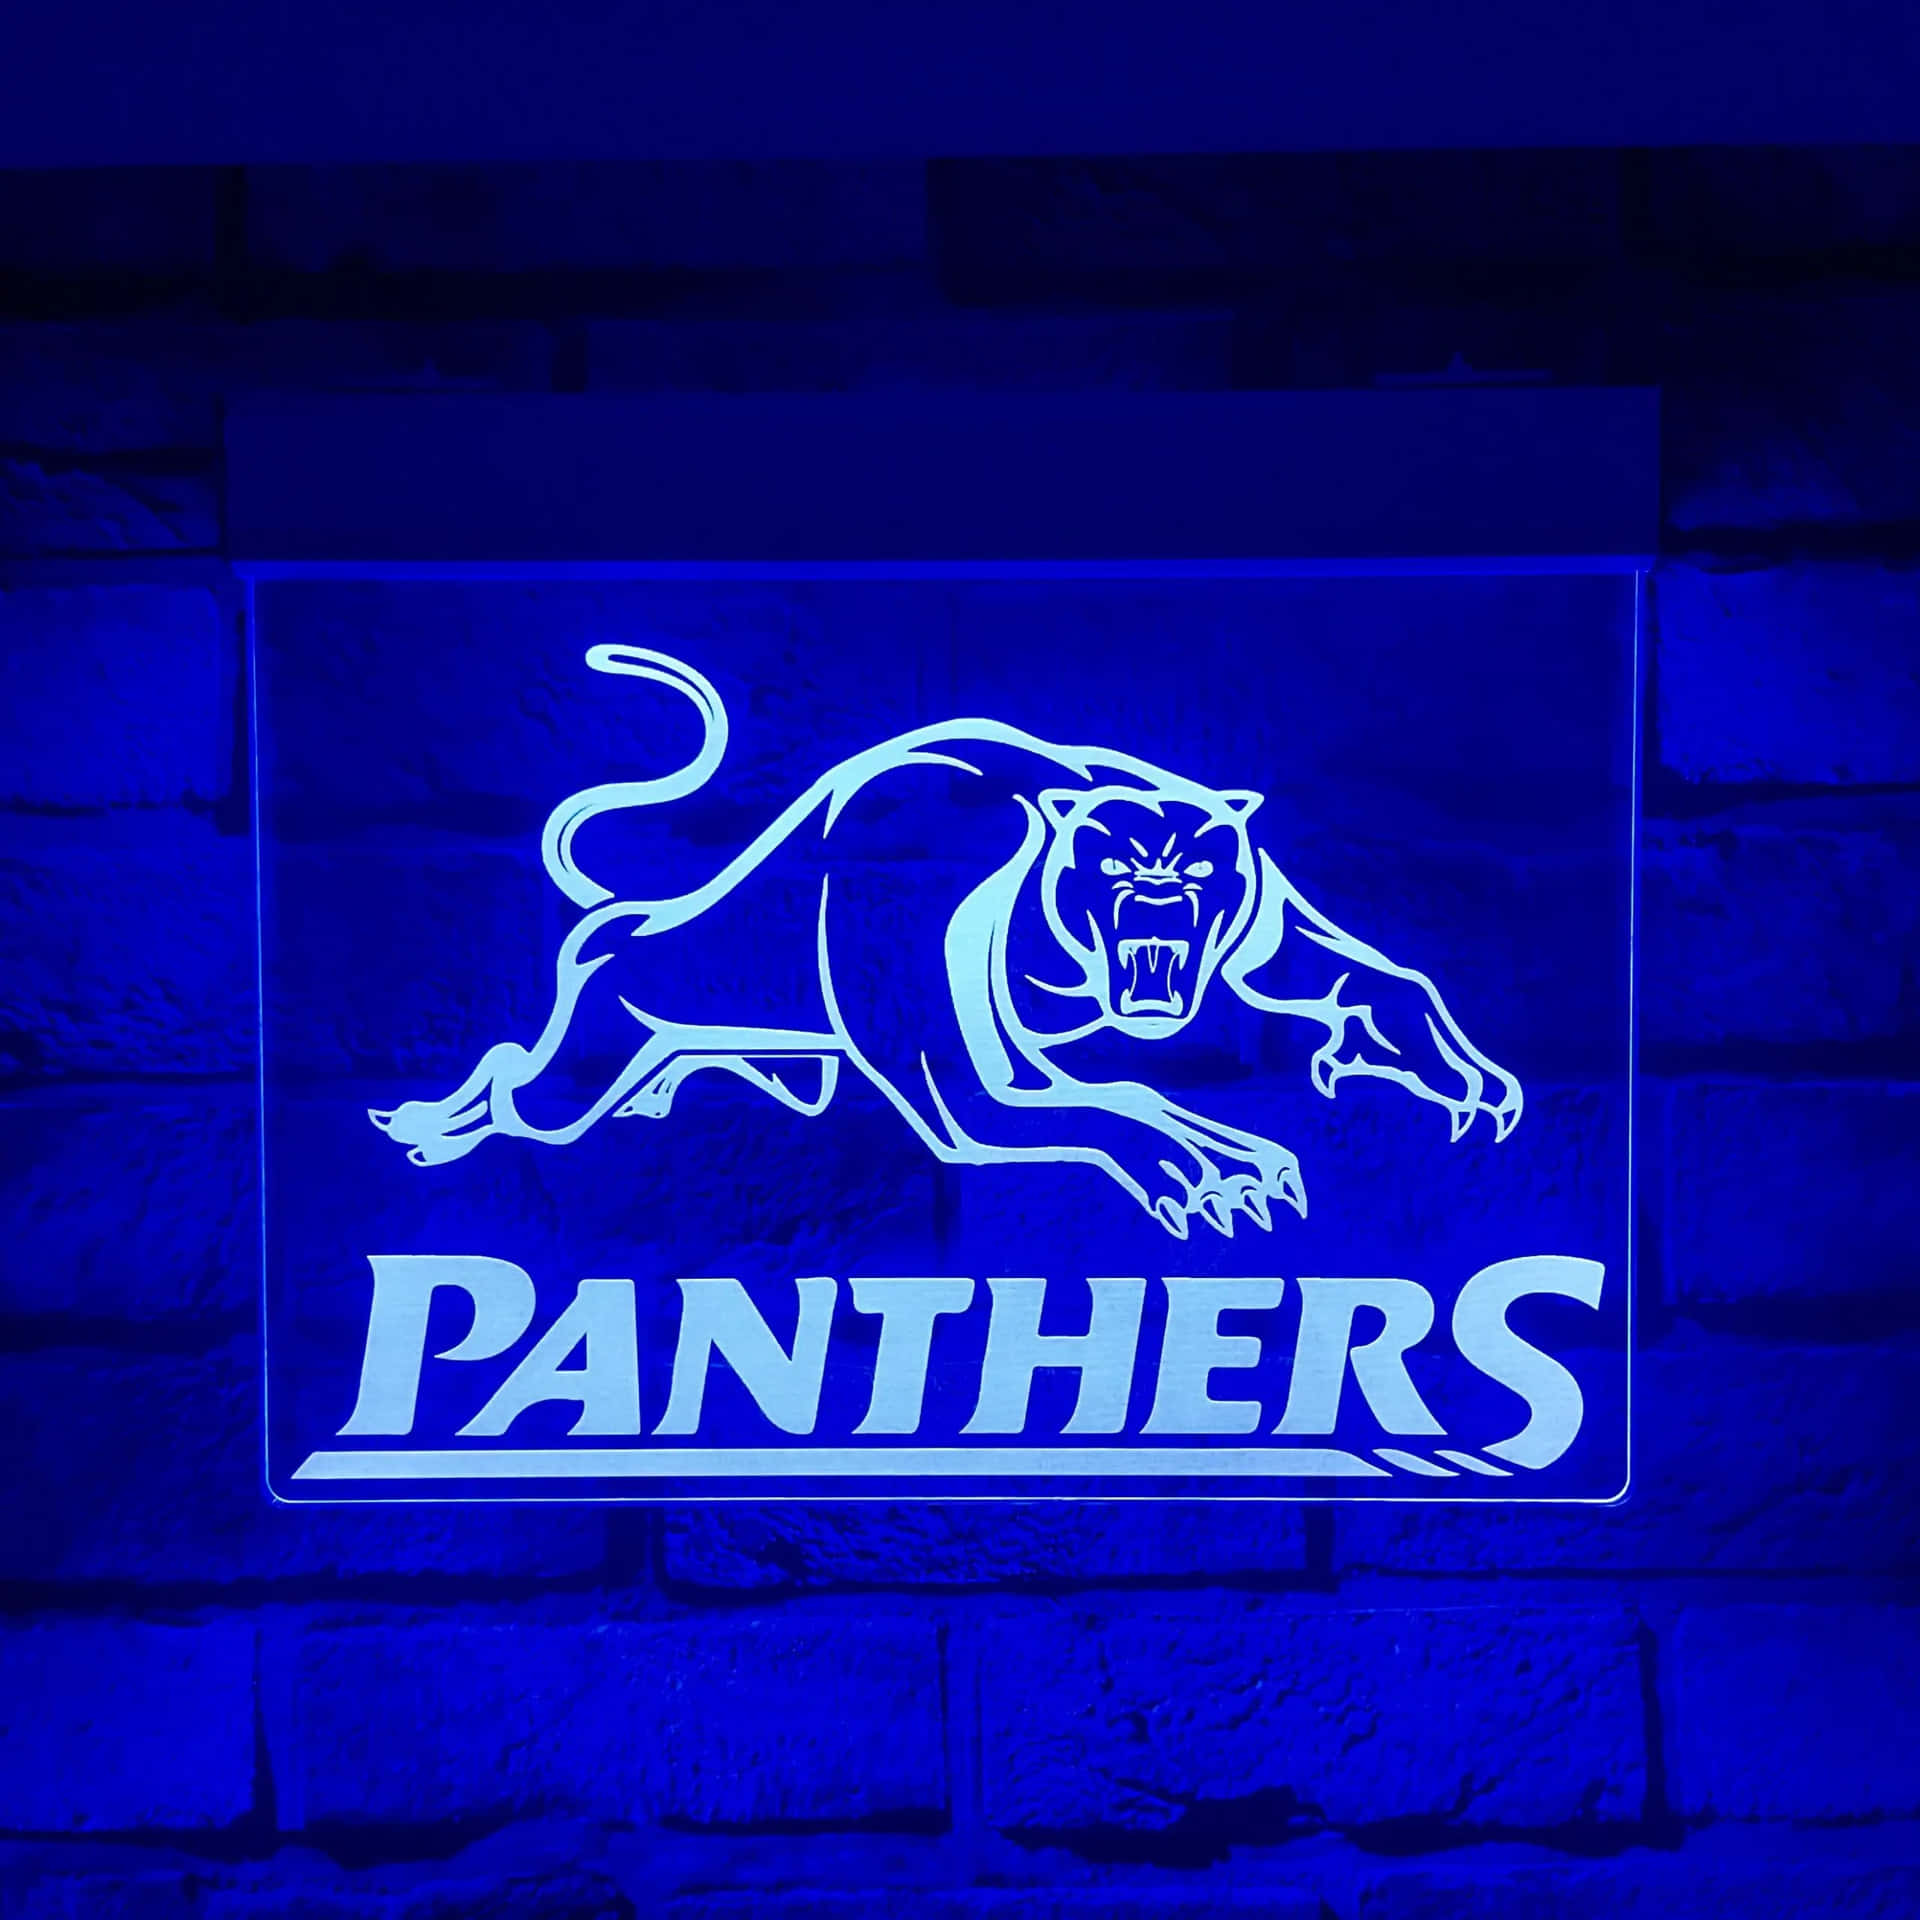 Penrithpanthers - Los Panthers De Penrith. Fondo de pantalla